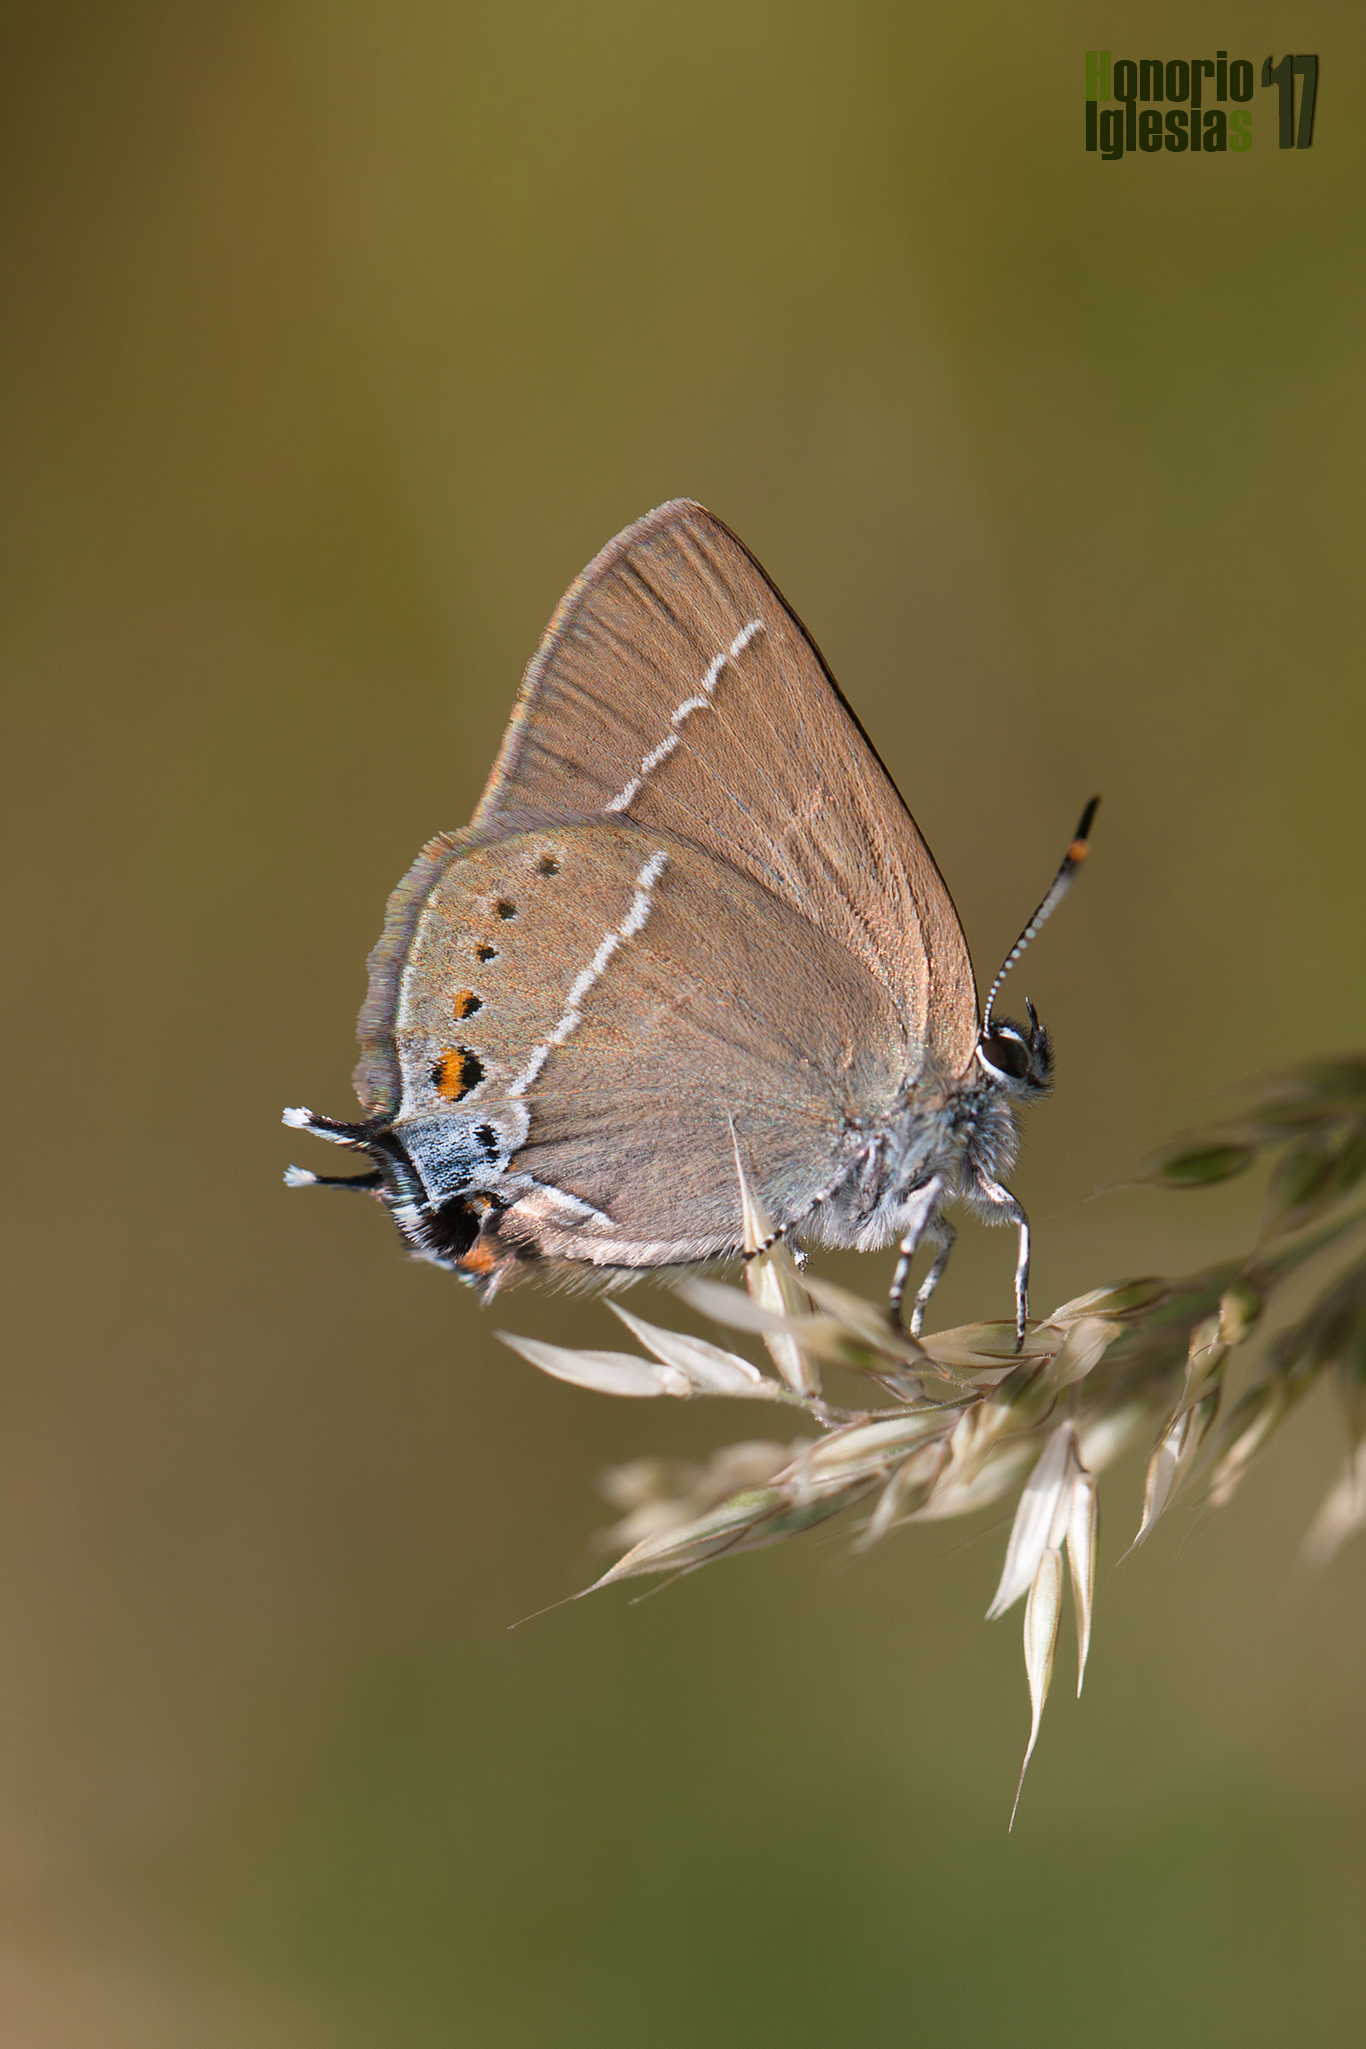 Ejemplar de mariposa rabicorta de mancha azul o mancha azul (Satyrium spini) , mostrando la gran mancha azulada del ángulo anal del ala posterior.